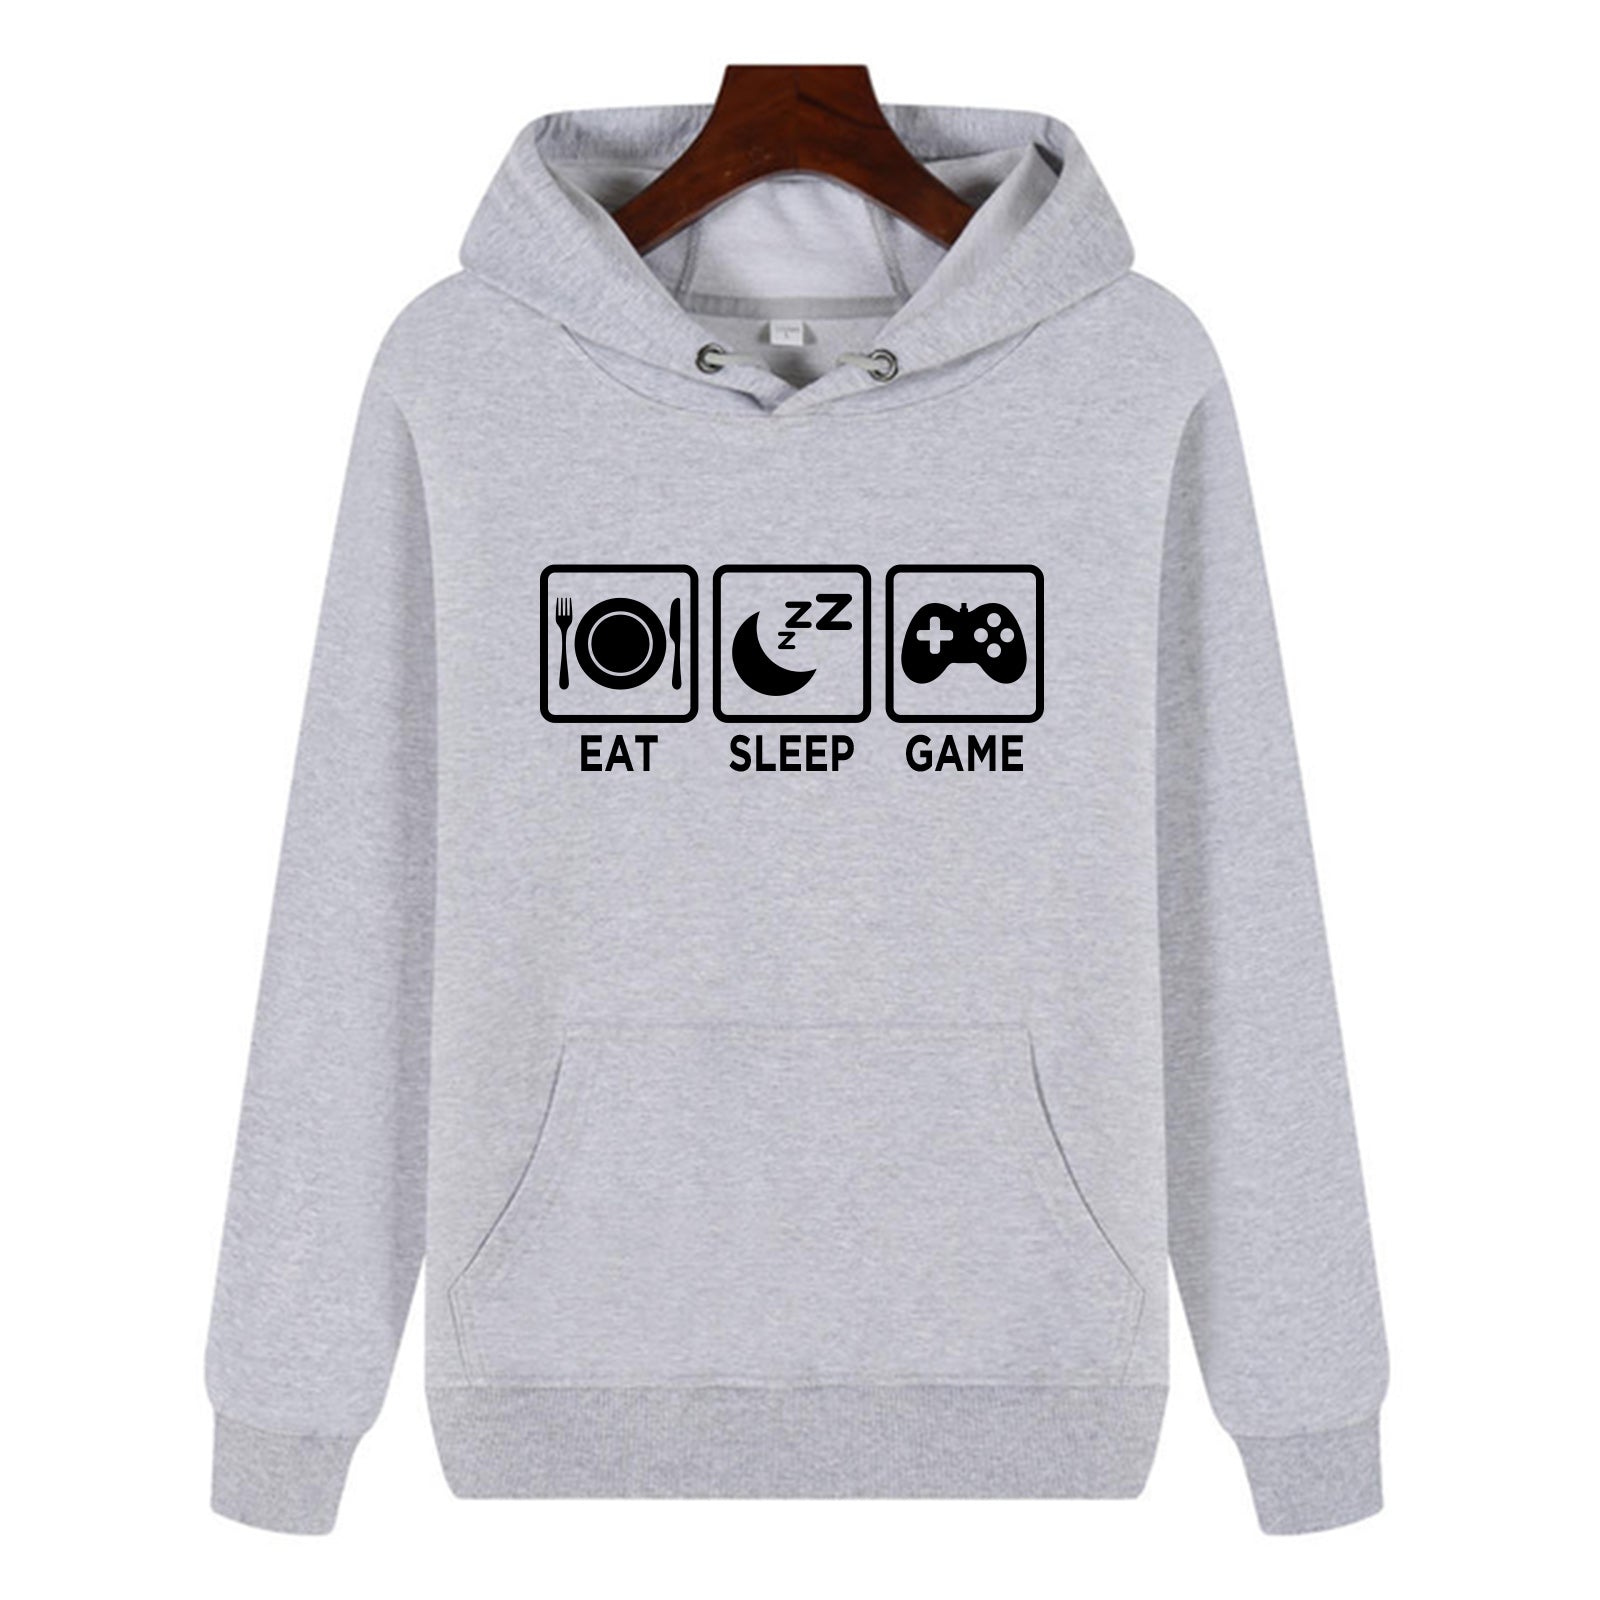 Funny Humor Print Hoodie Eat Sleep Game Hooded Sweatshirt